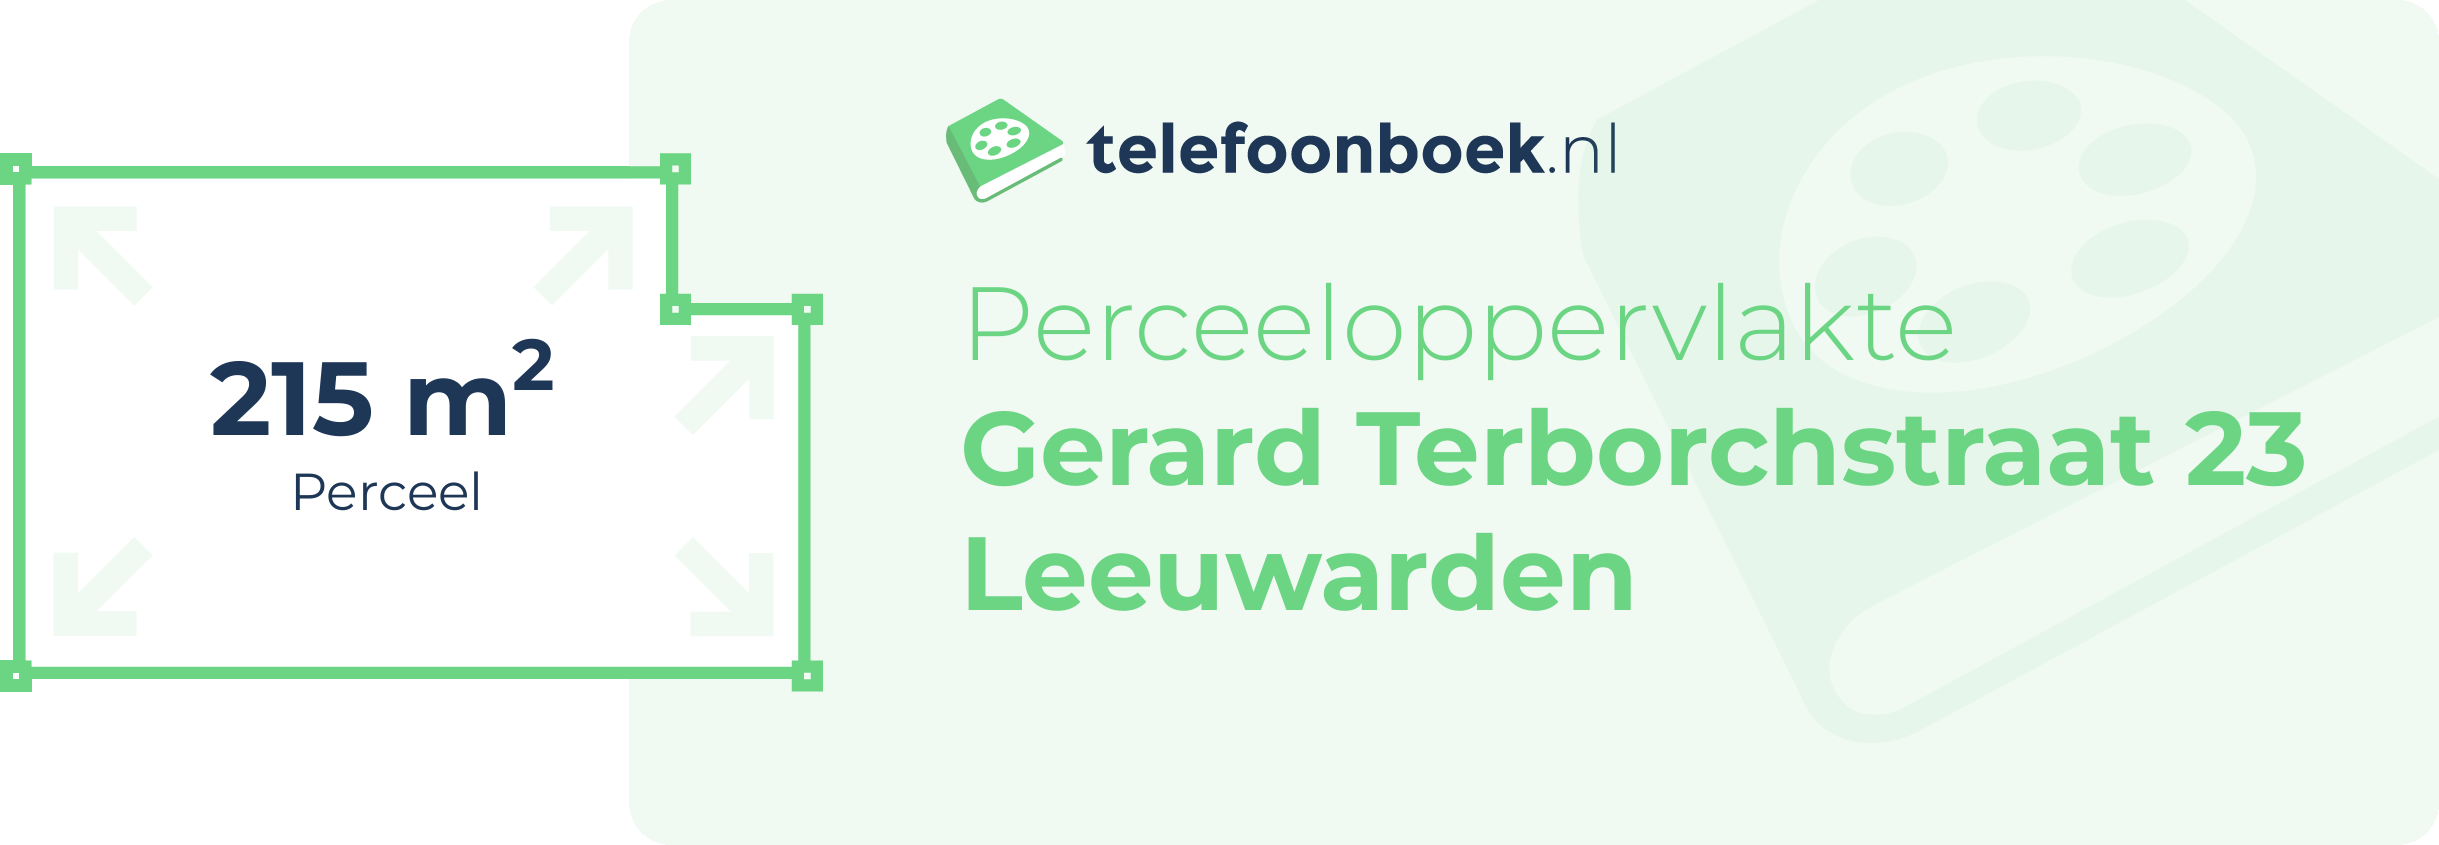 Perceeloppervlakte Gerard Terborchstraat 23 Leeuwarden